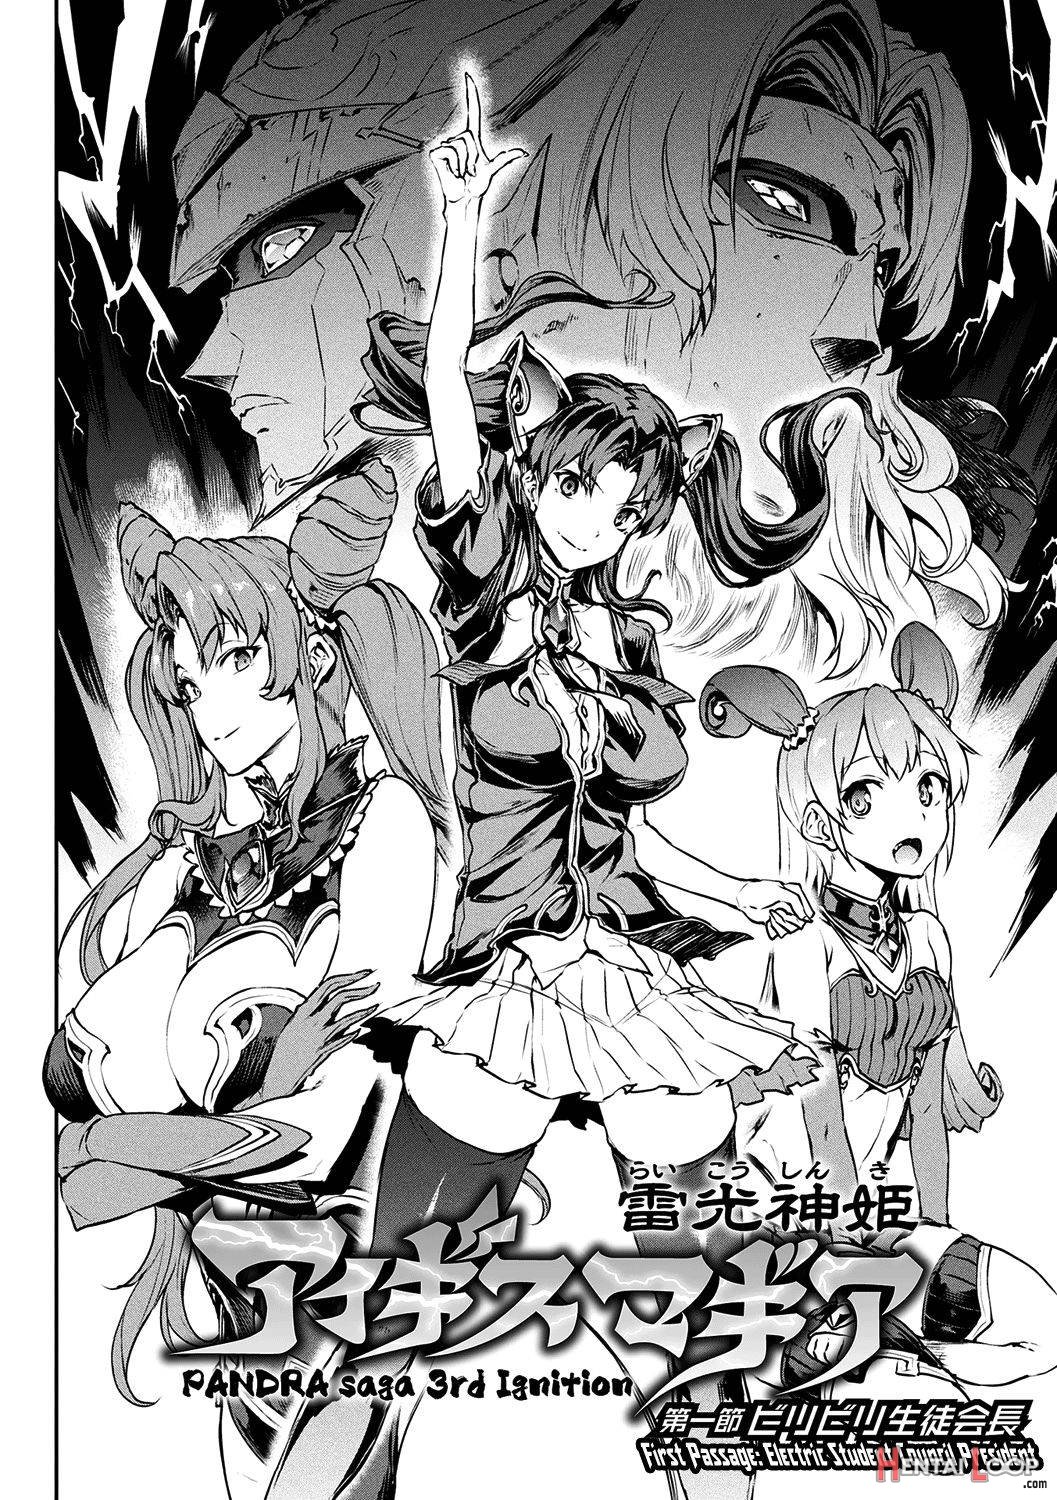 Raikou Shinki Igis Magia -PANDRA saga 3rd ignition page 11